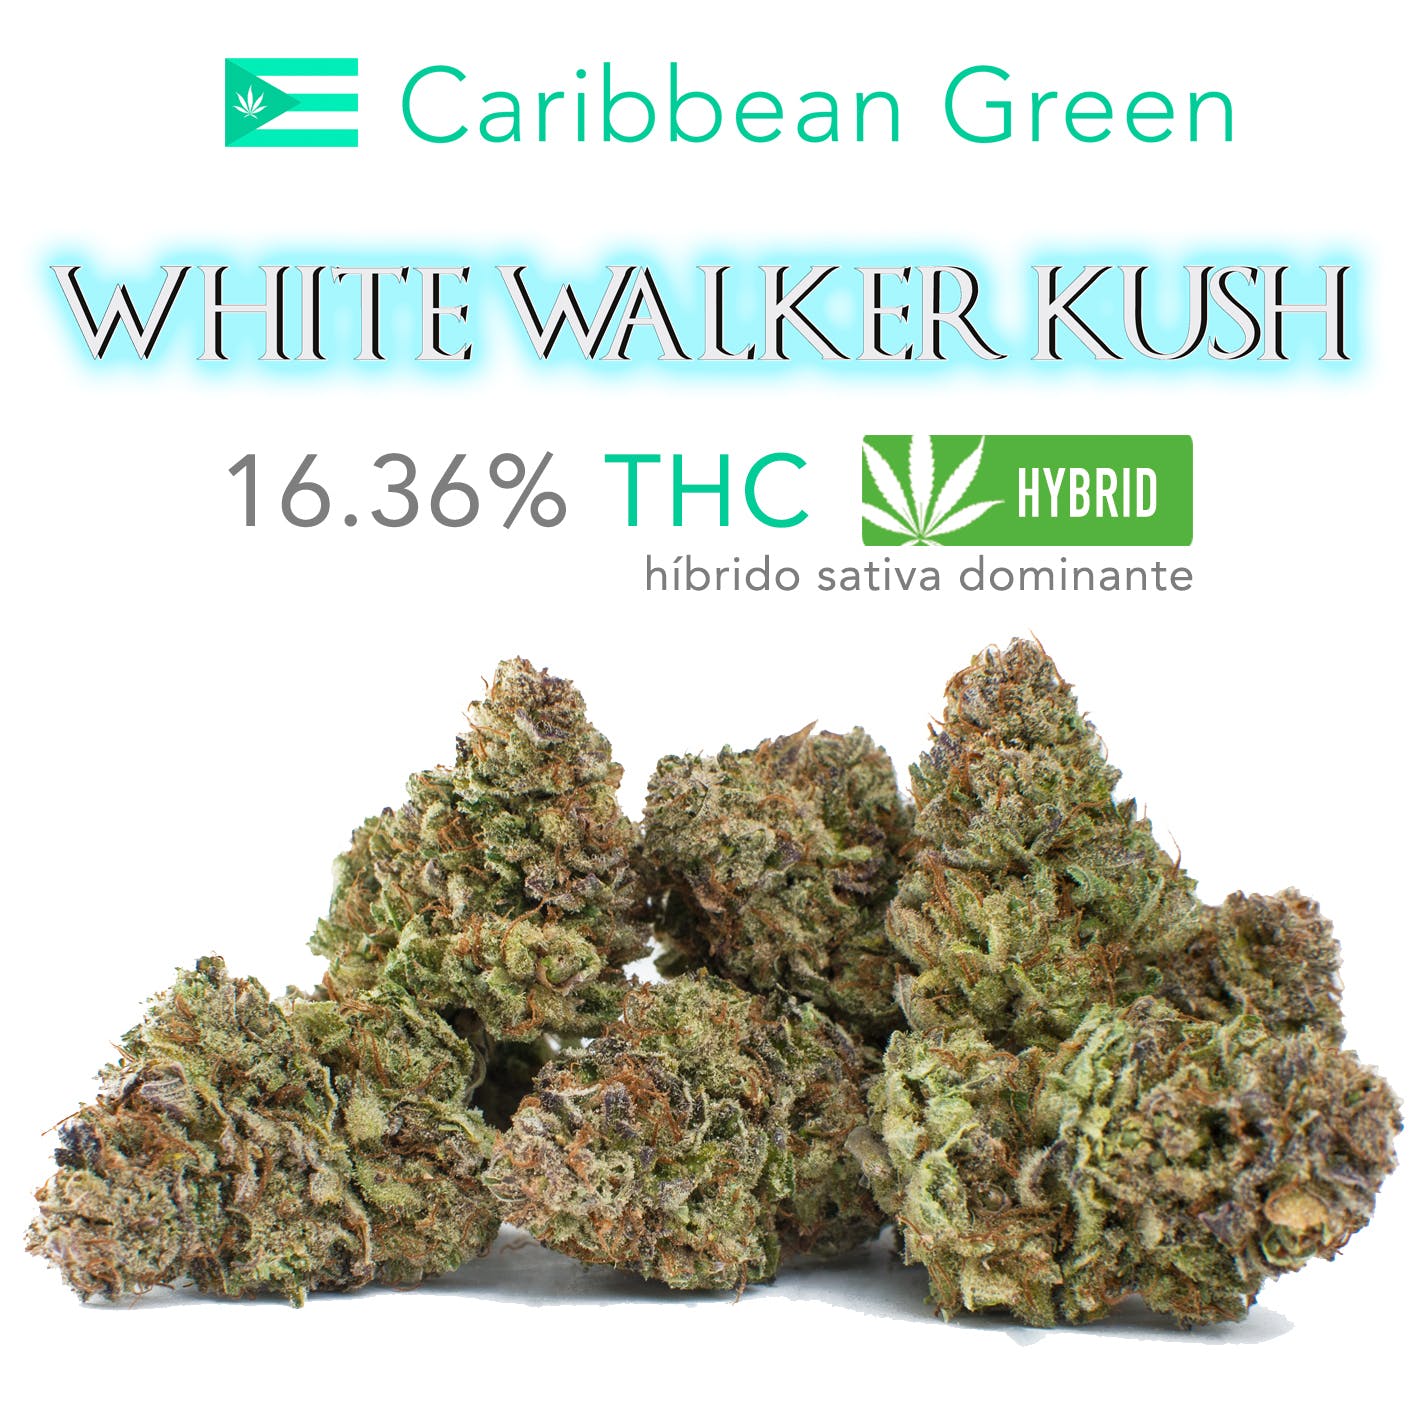 White Walker Kush 16.36%- CG Promise of the Week!